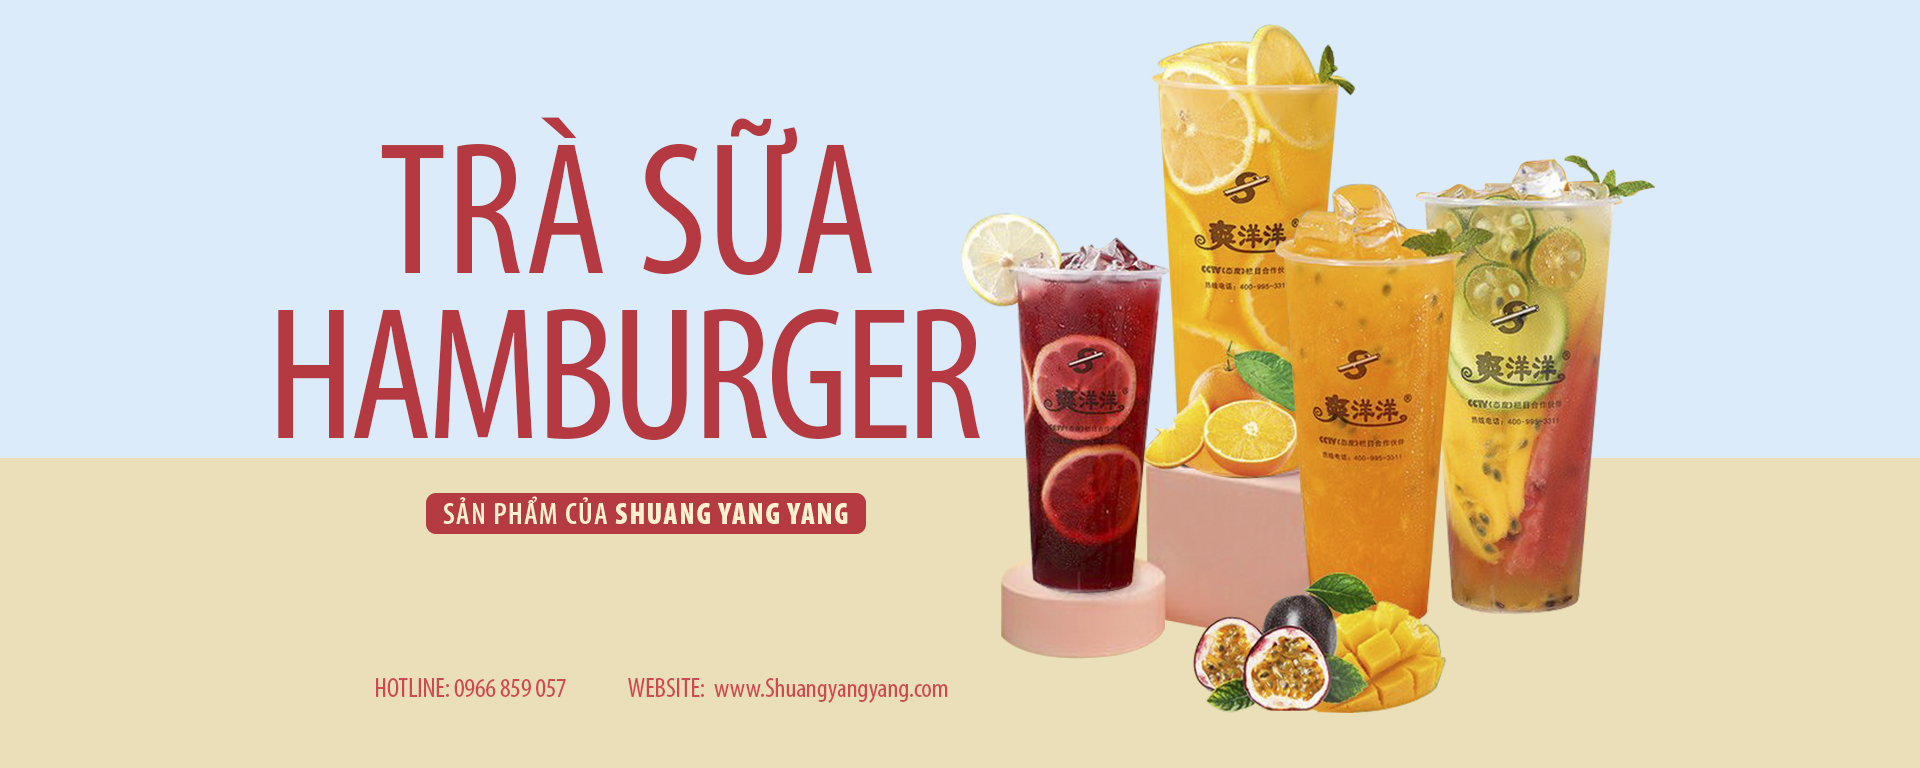 Shuangyangyang- thương hiệu trà sữa hamberger uy tín chất lượng